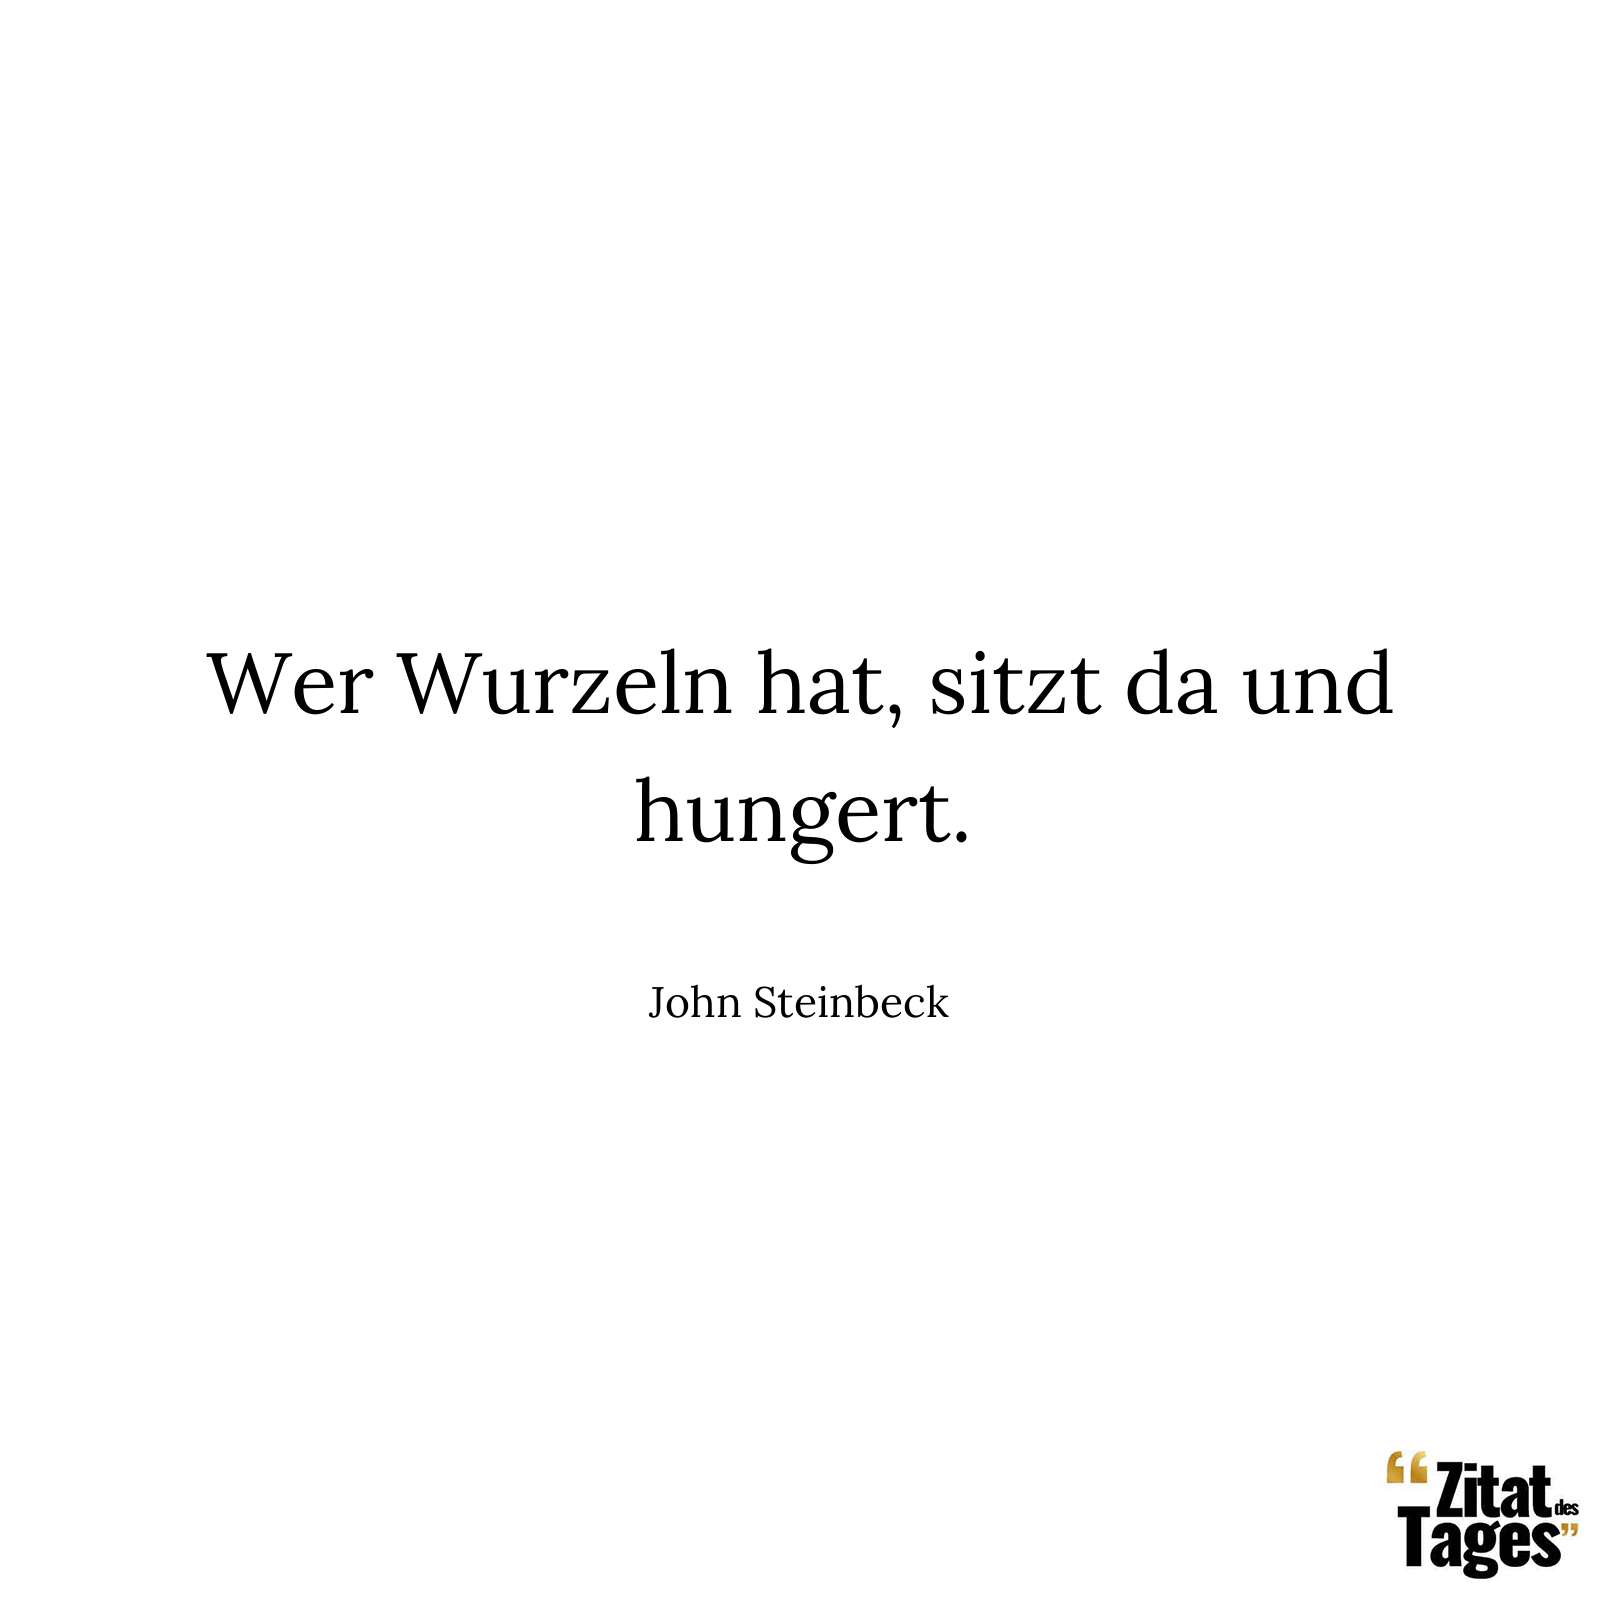 Wer Wurzeln hat, sitzt da und hungert. - John Steinbeck